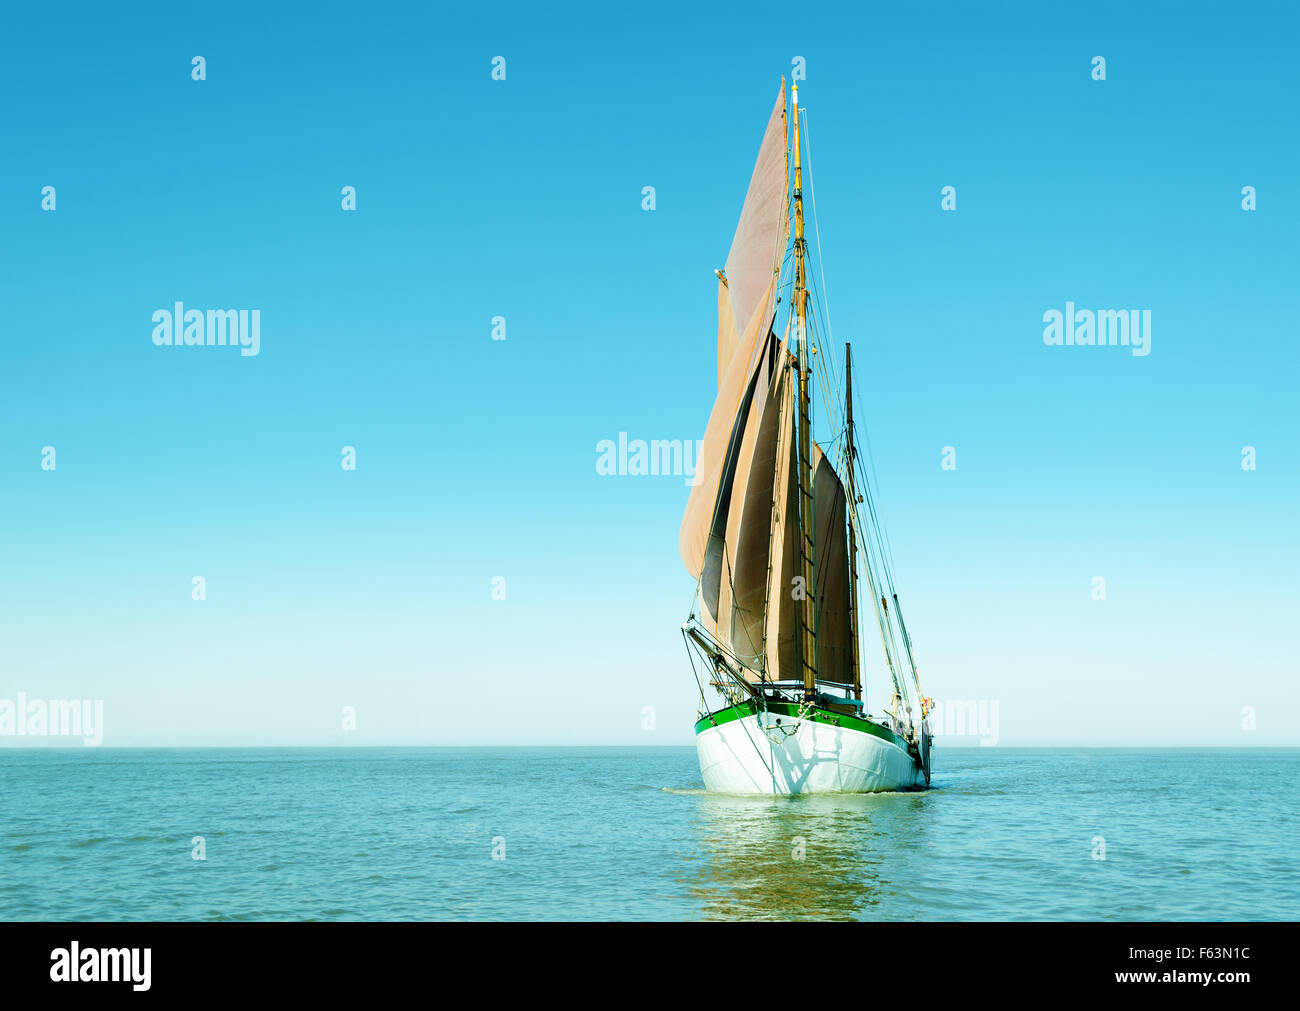 Tradizionale nave a vela da soli sull'oceano. Immagine luminosa principalmente con il colore ciano. Foto Stock